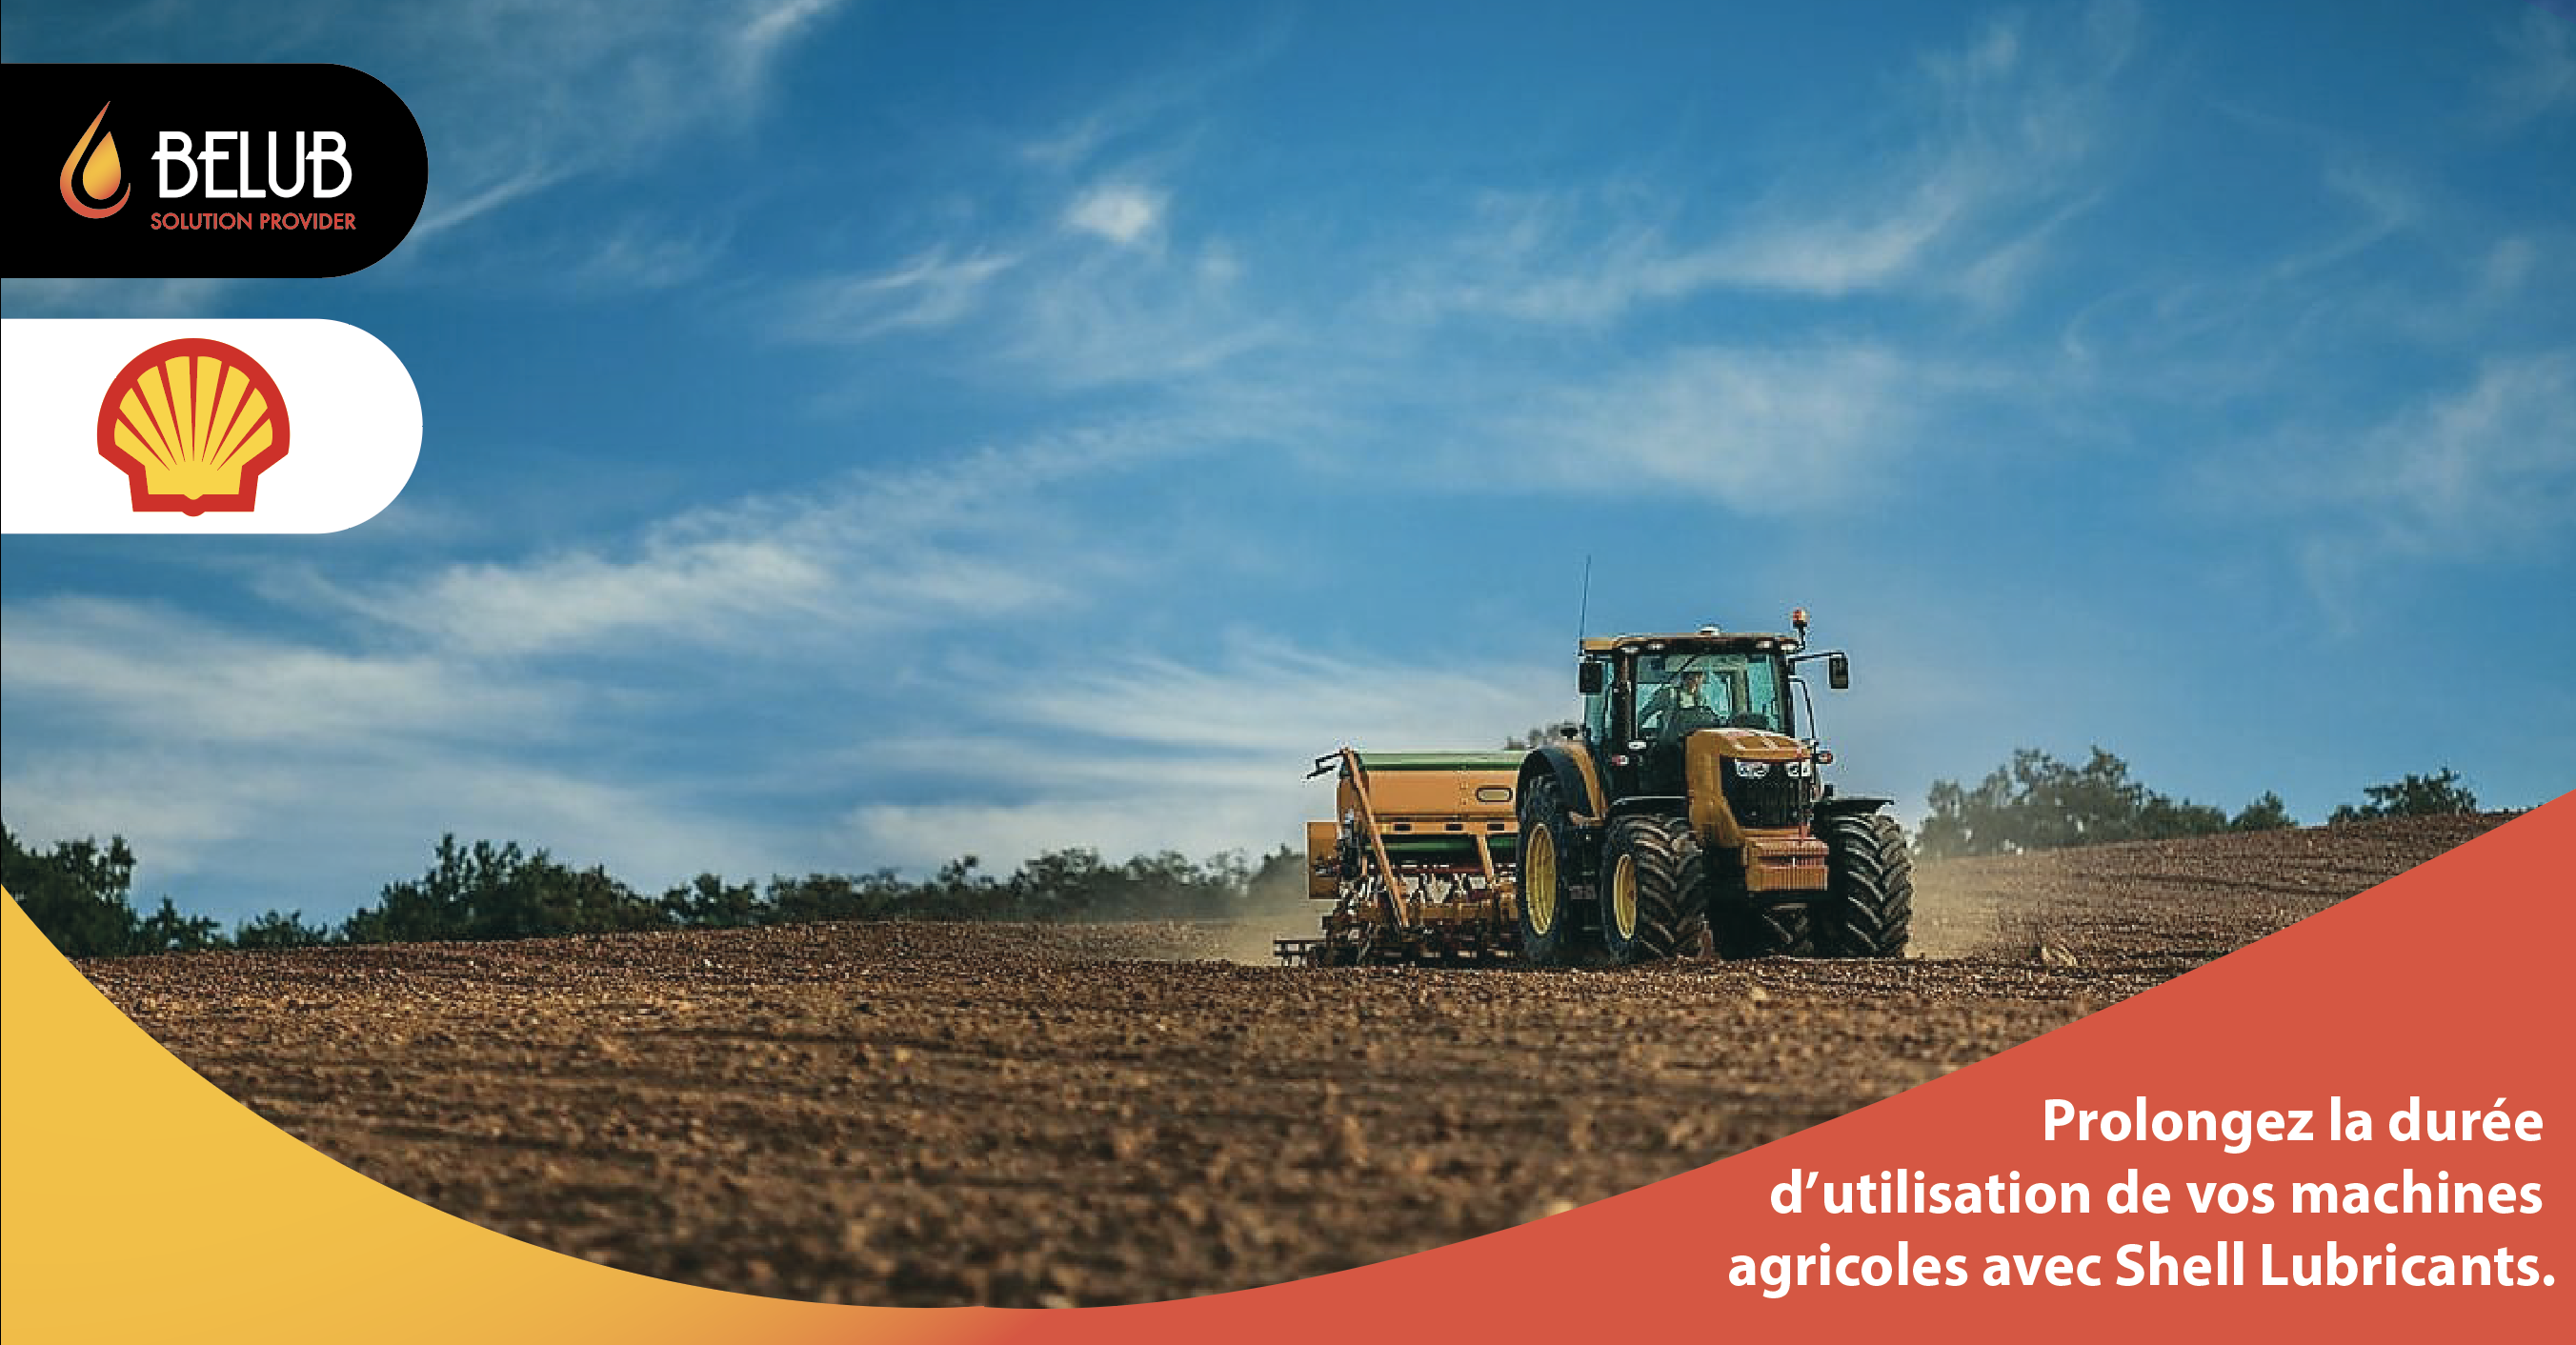 Prolongez la durée d’utilisation de vos machines agricoles avec Shell Lubricants.